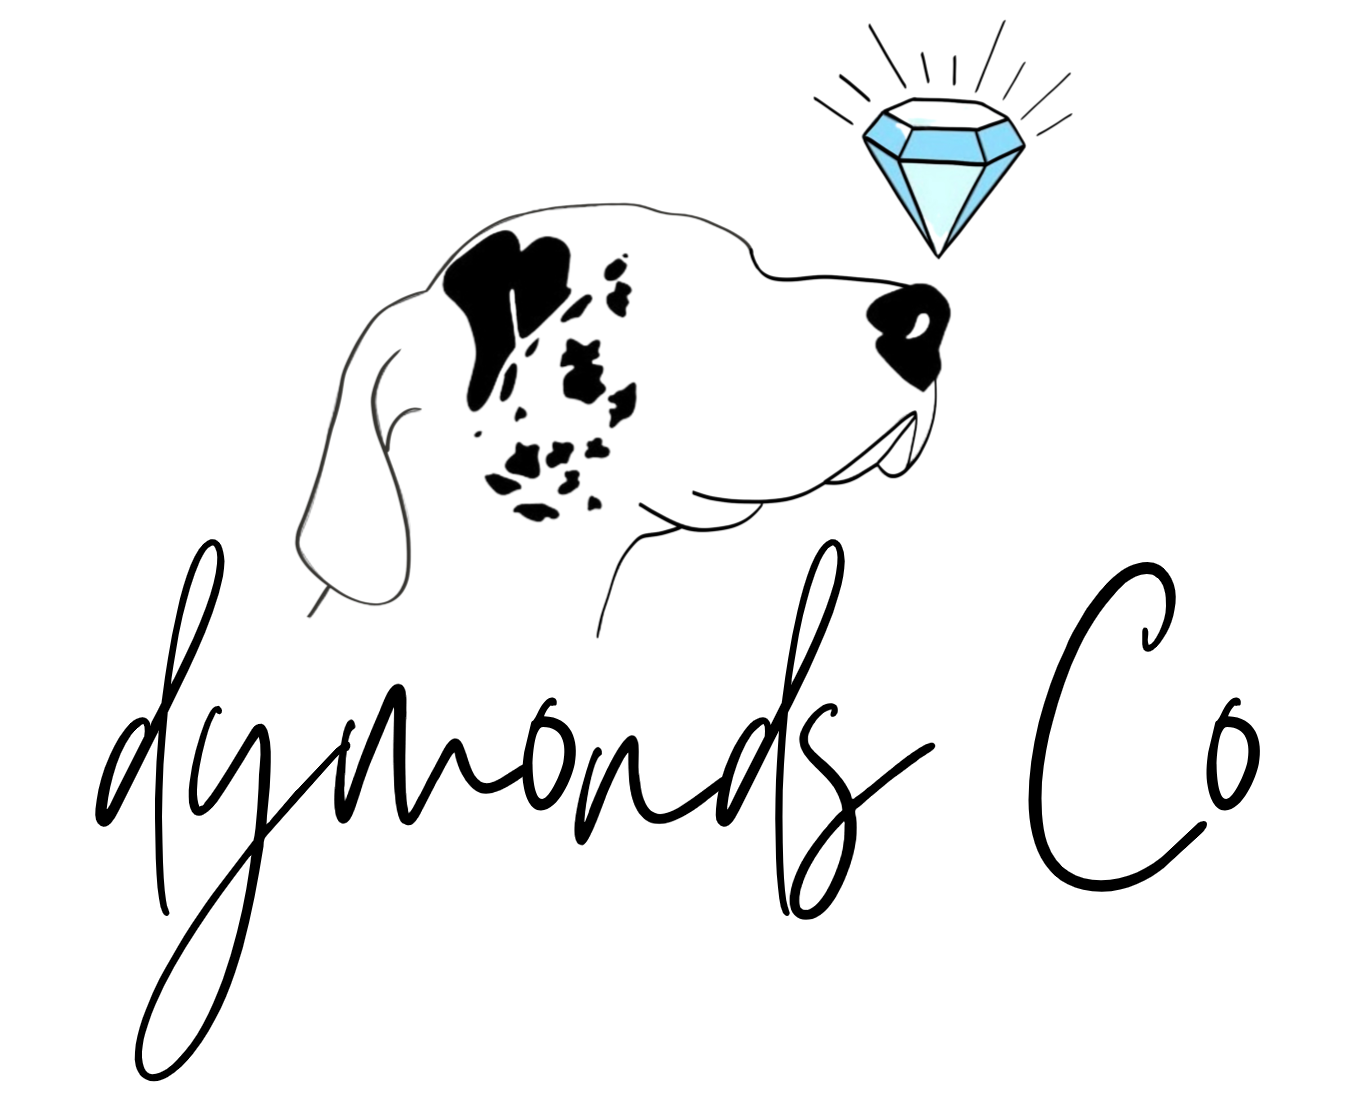 Dymond's